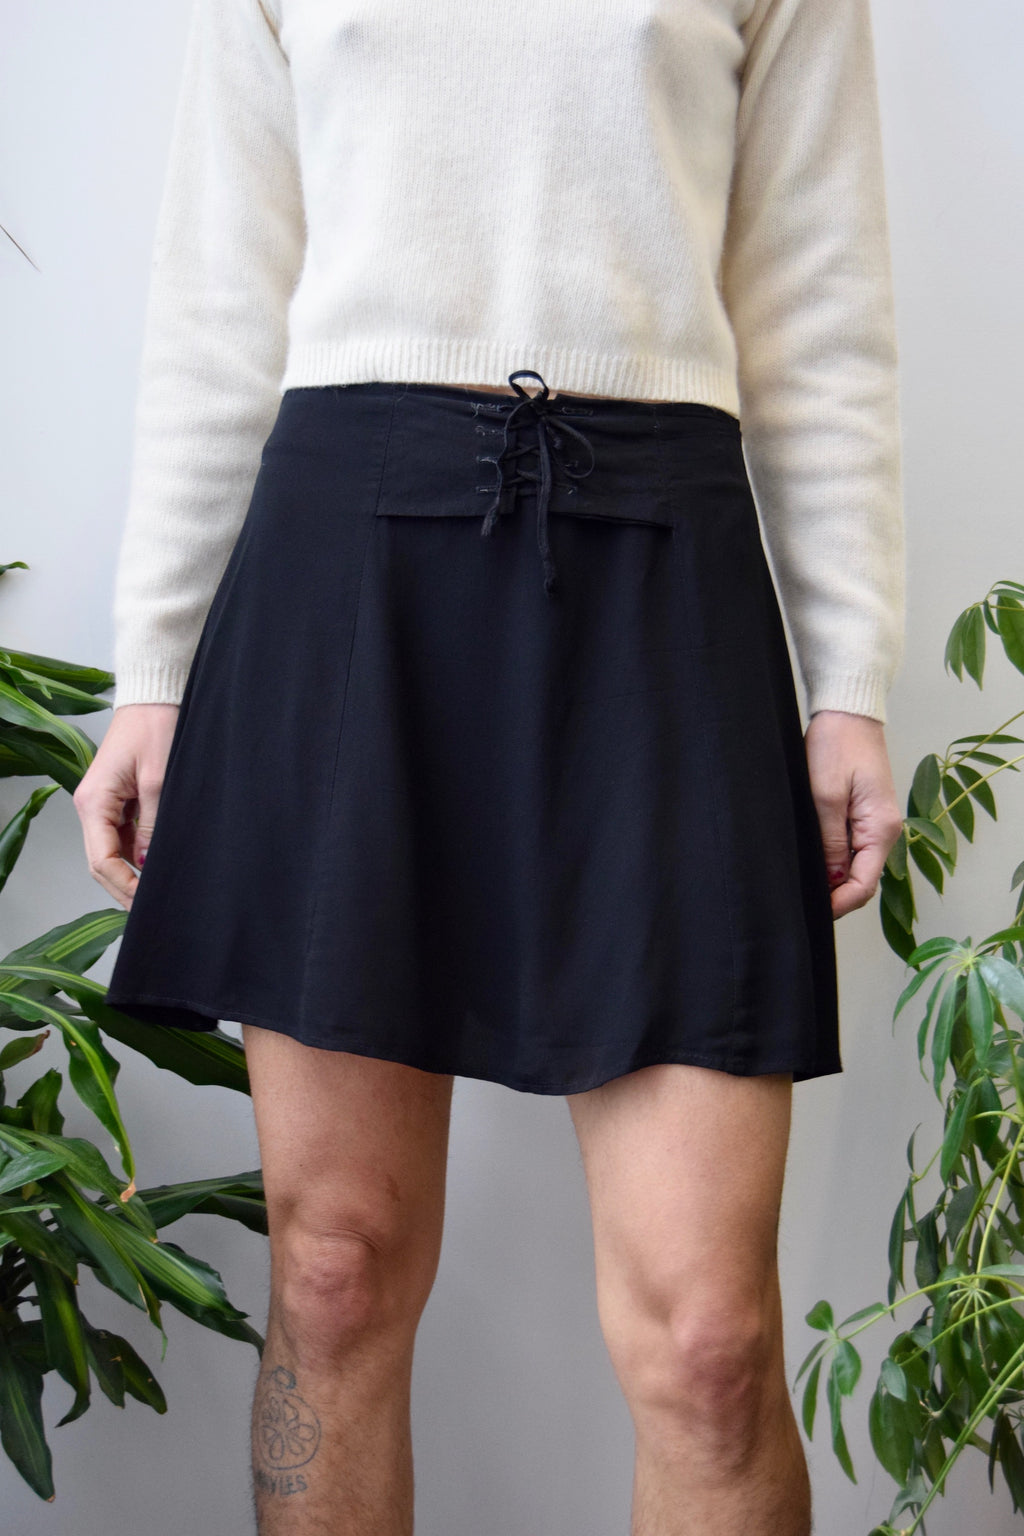 Nineties Lace Up Mini Skirt